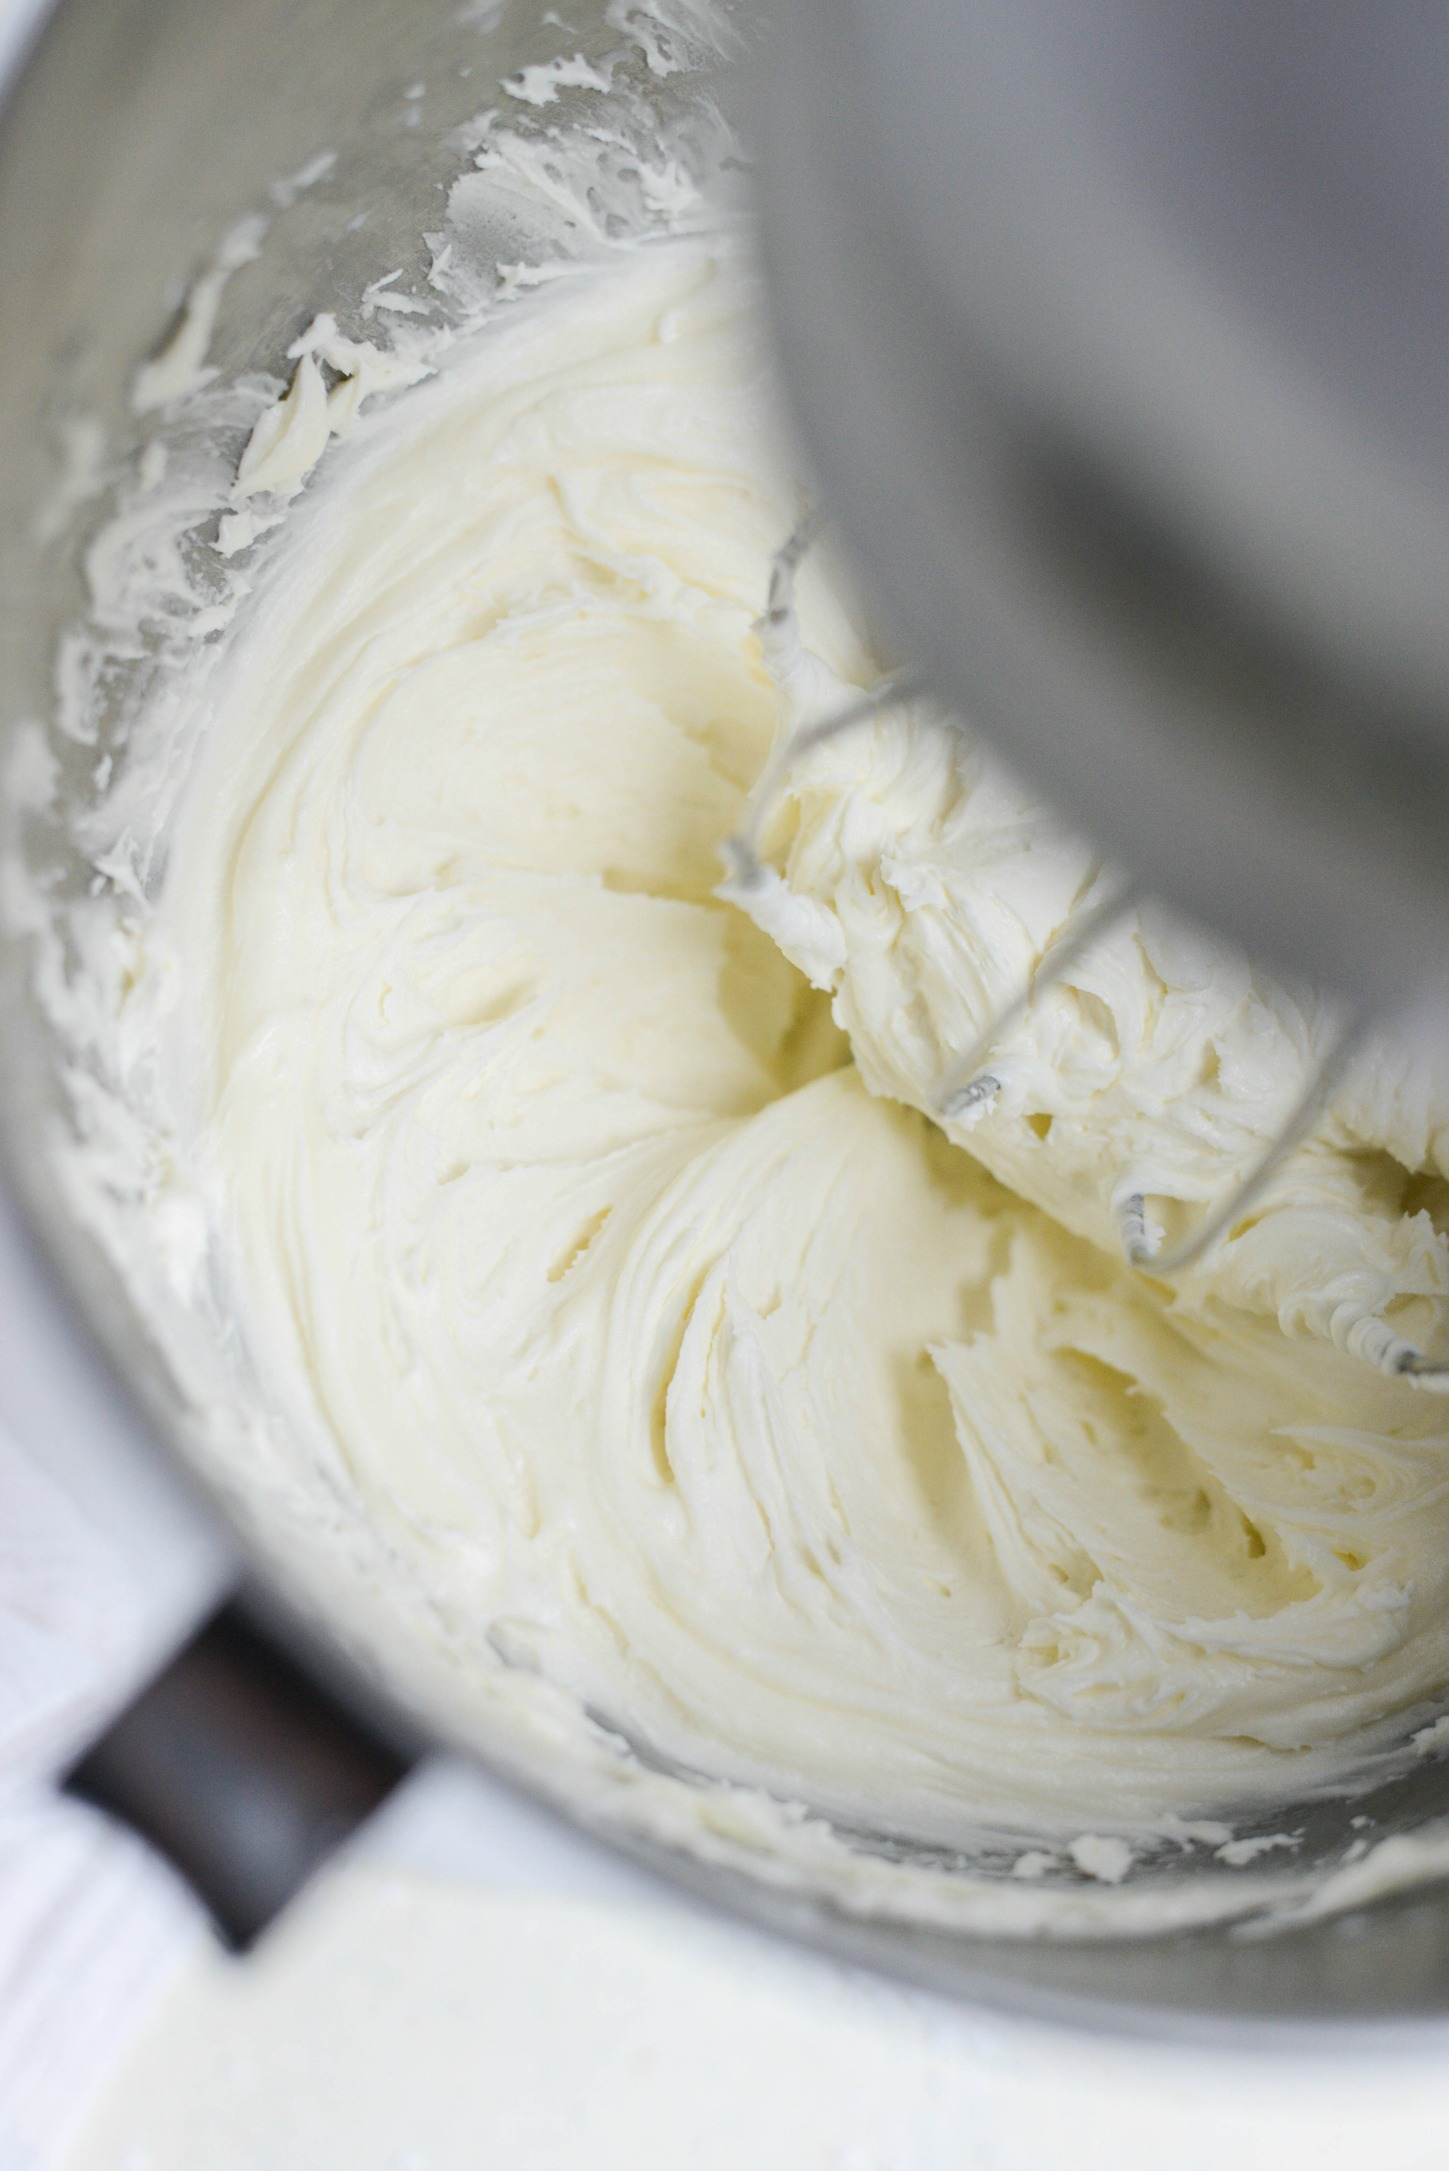 Geléia de creme de manteiga branca